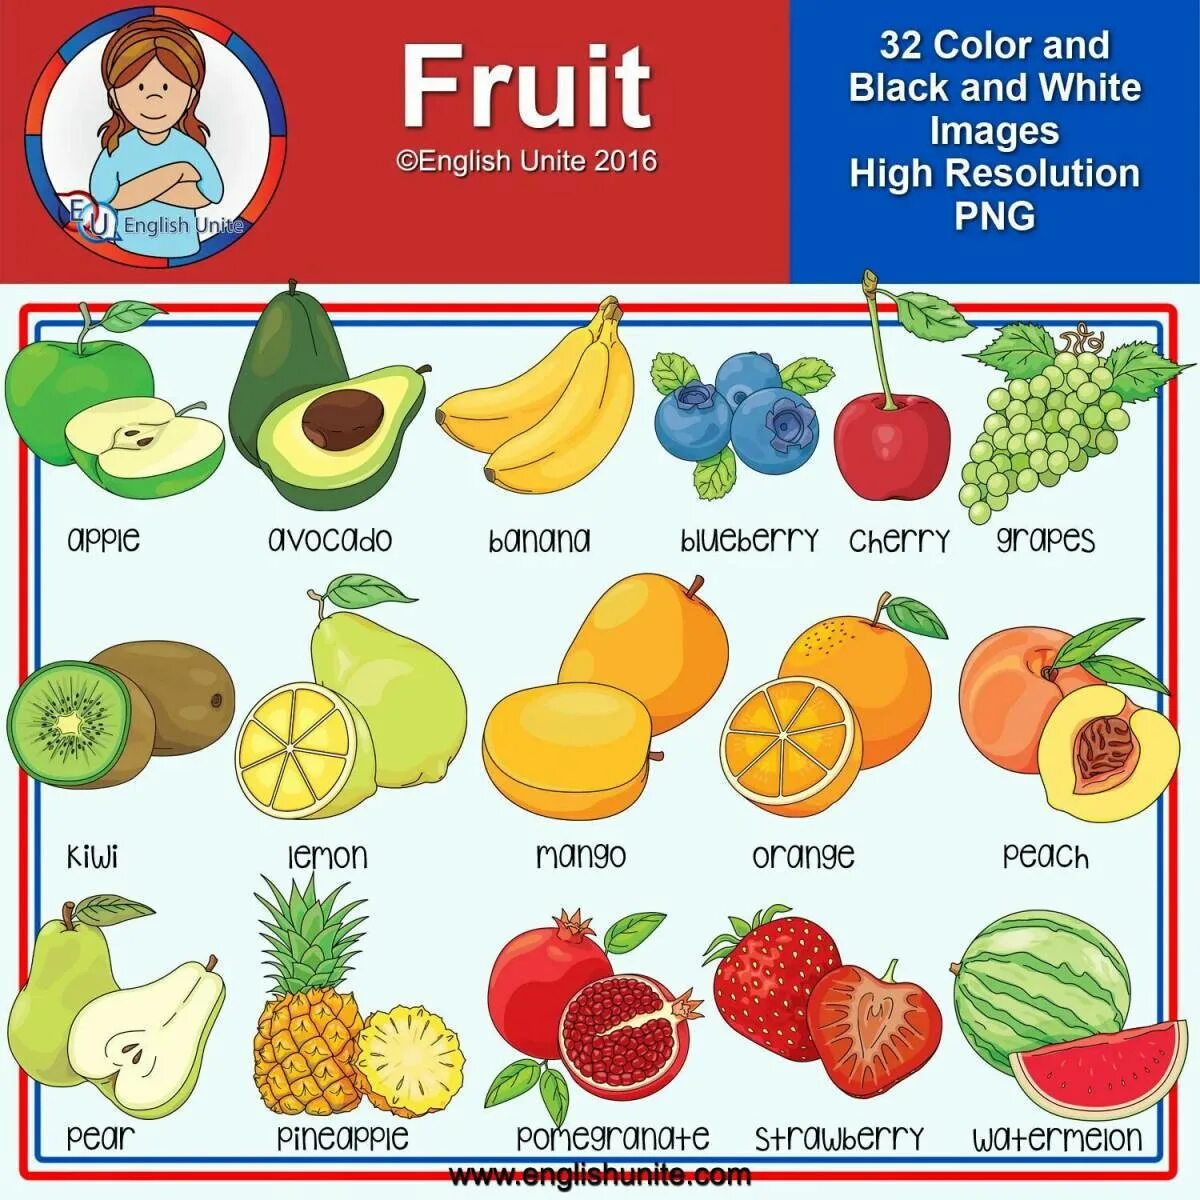 Есть фрукты на английском. Фрукты по английскому для детей. Фрукты на англ. Фрукты на англ для детей. Aaherns на английском lkz ltnb.